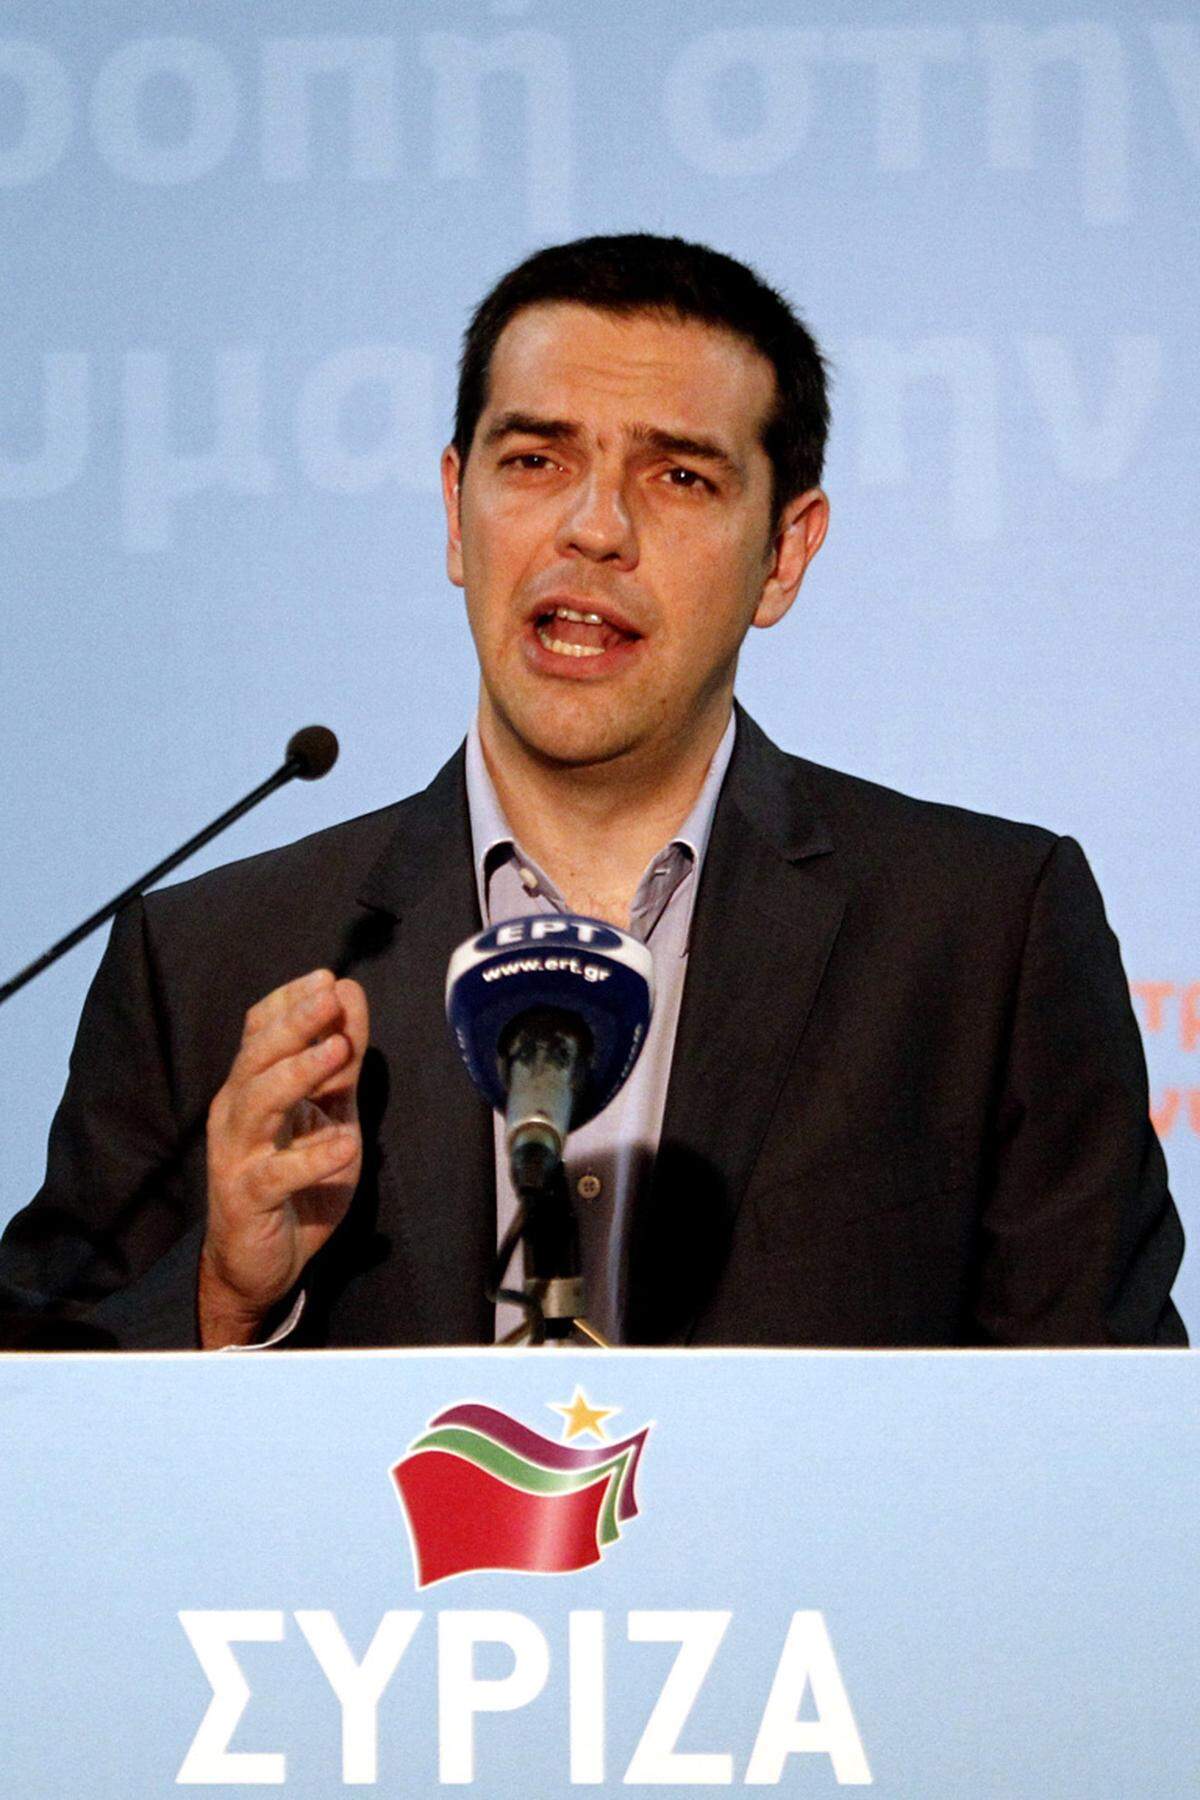 Syriza-Chef Alexis Tsipras gab sich dennoch kämpferisch: "Das Volk hat zweimal innerhalb von sechs Wochen das Sparprogramm verurteilt. Ab Montag setzen wir den Kampf fort. Ein neuer Tag für Griechenland kommt."